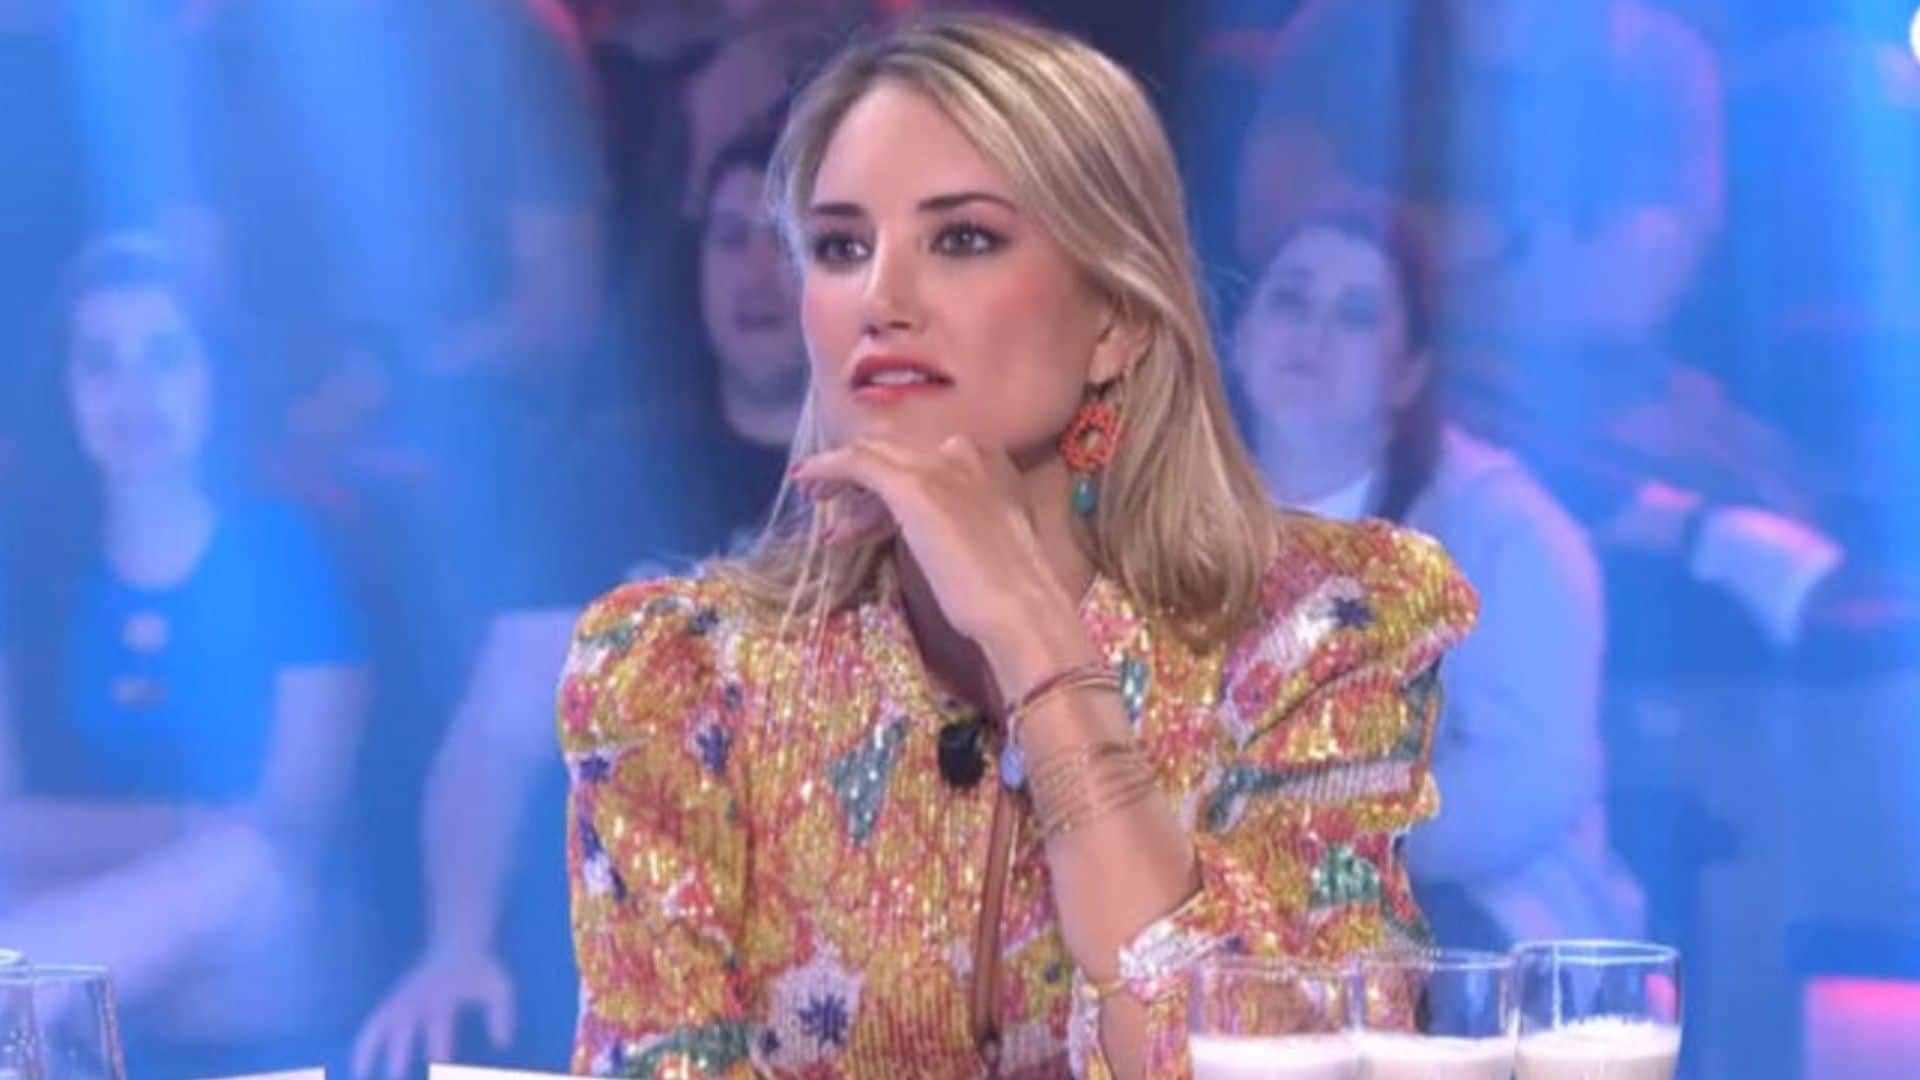 Alba Carrillo reaparece en televisión y se pronuncia sobre su salida de Telecinco: 'Están haciendo cambios... a peor'